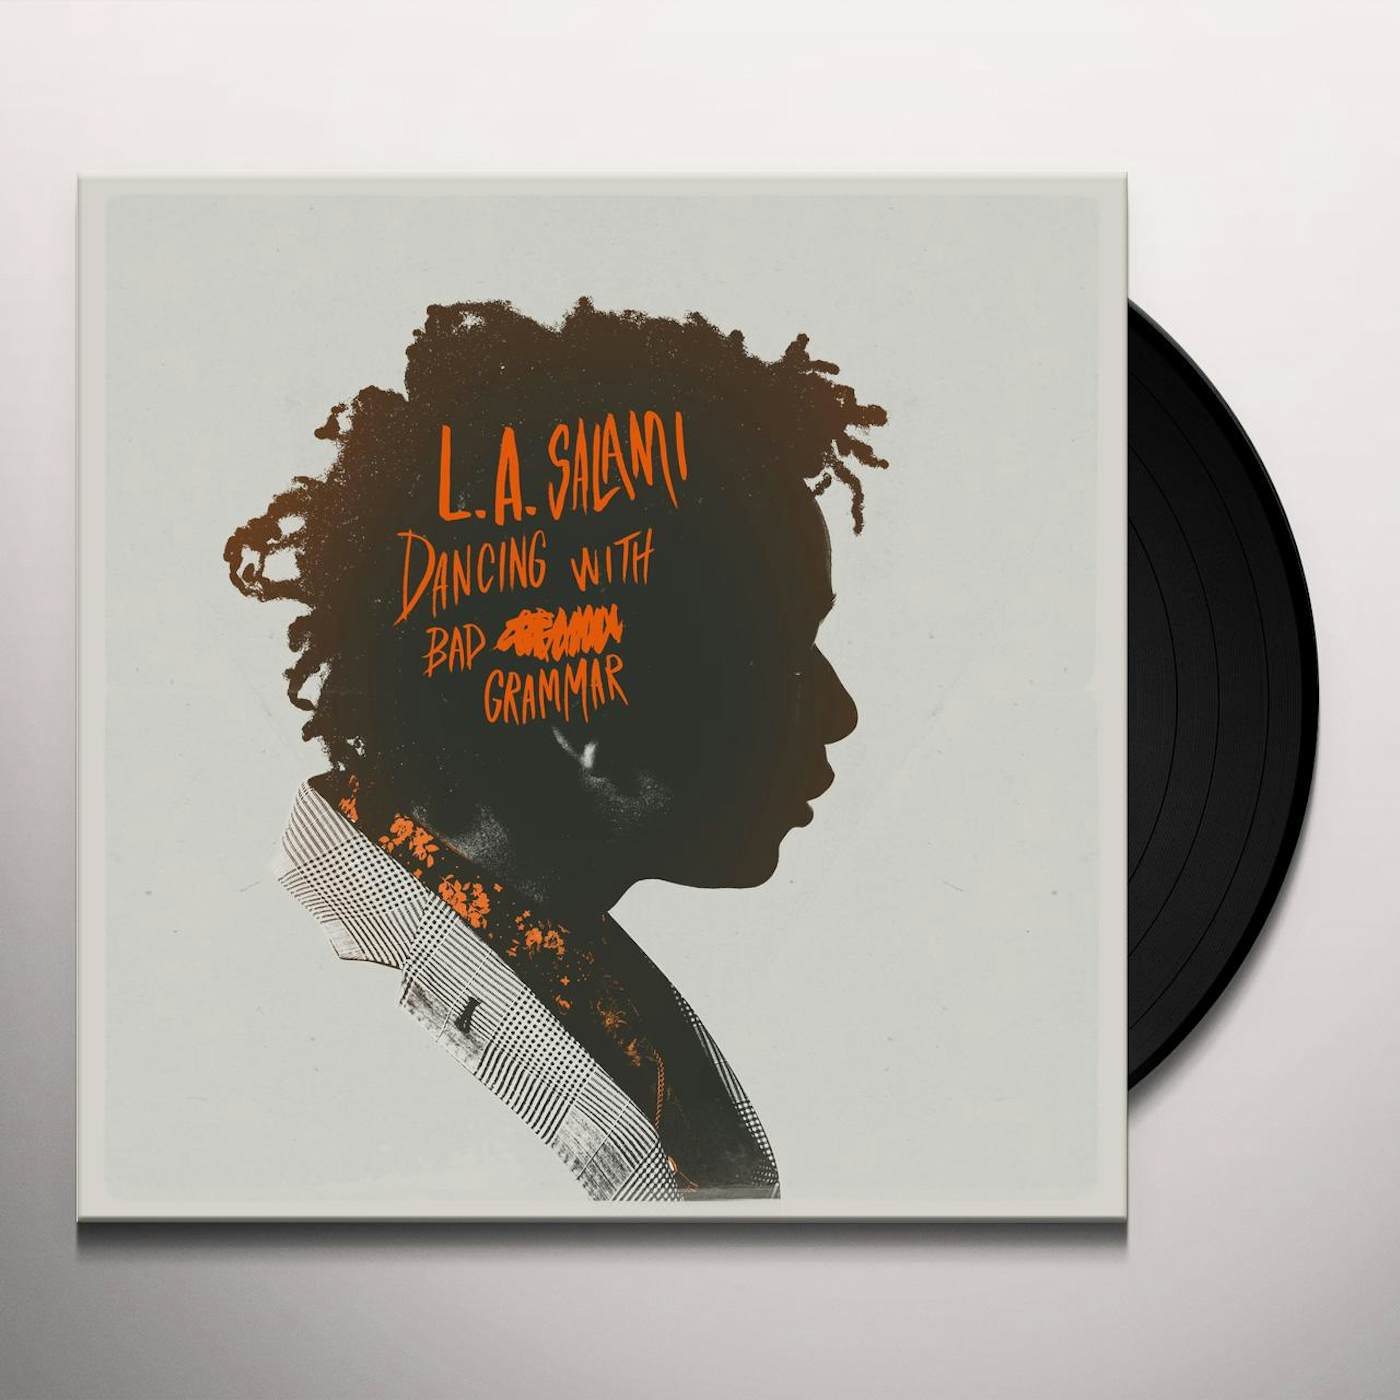 L.A. Salami Dancing With Bad Grammar: The Directors Cut Vinyl Record